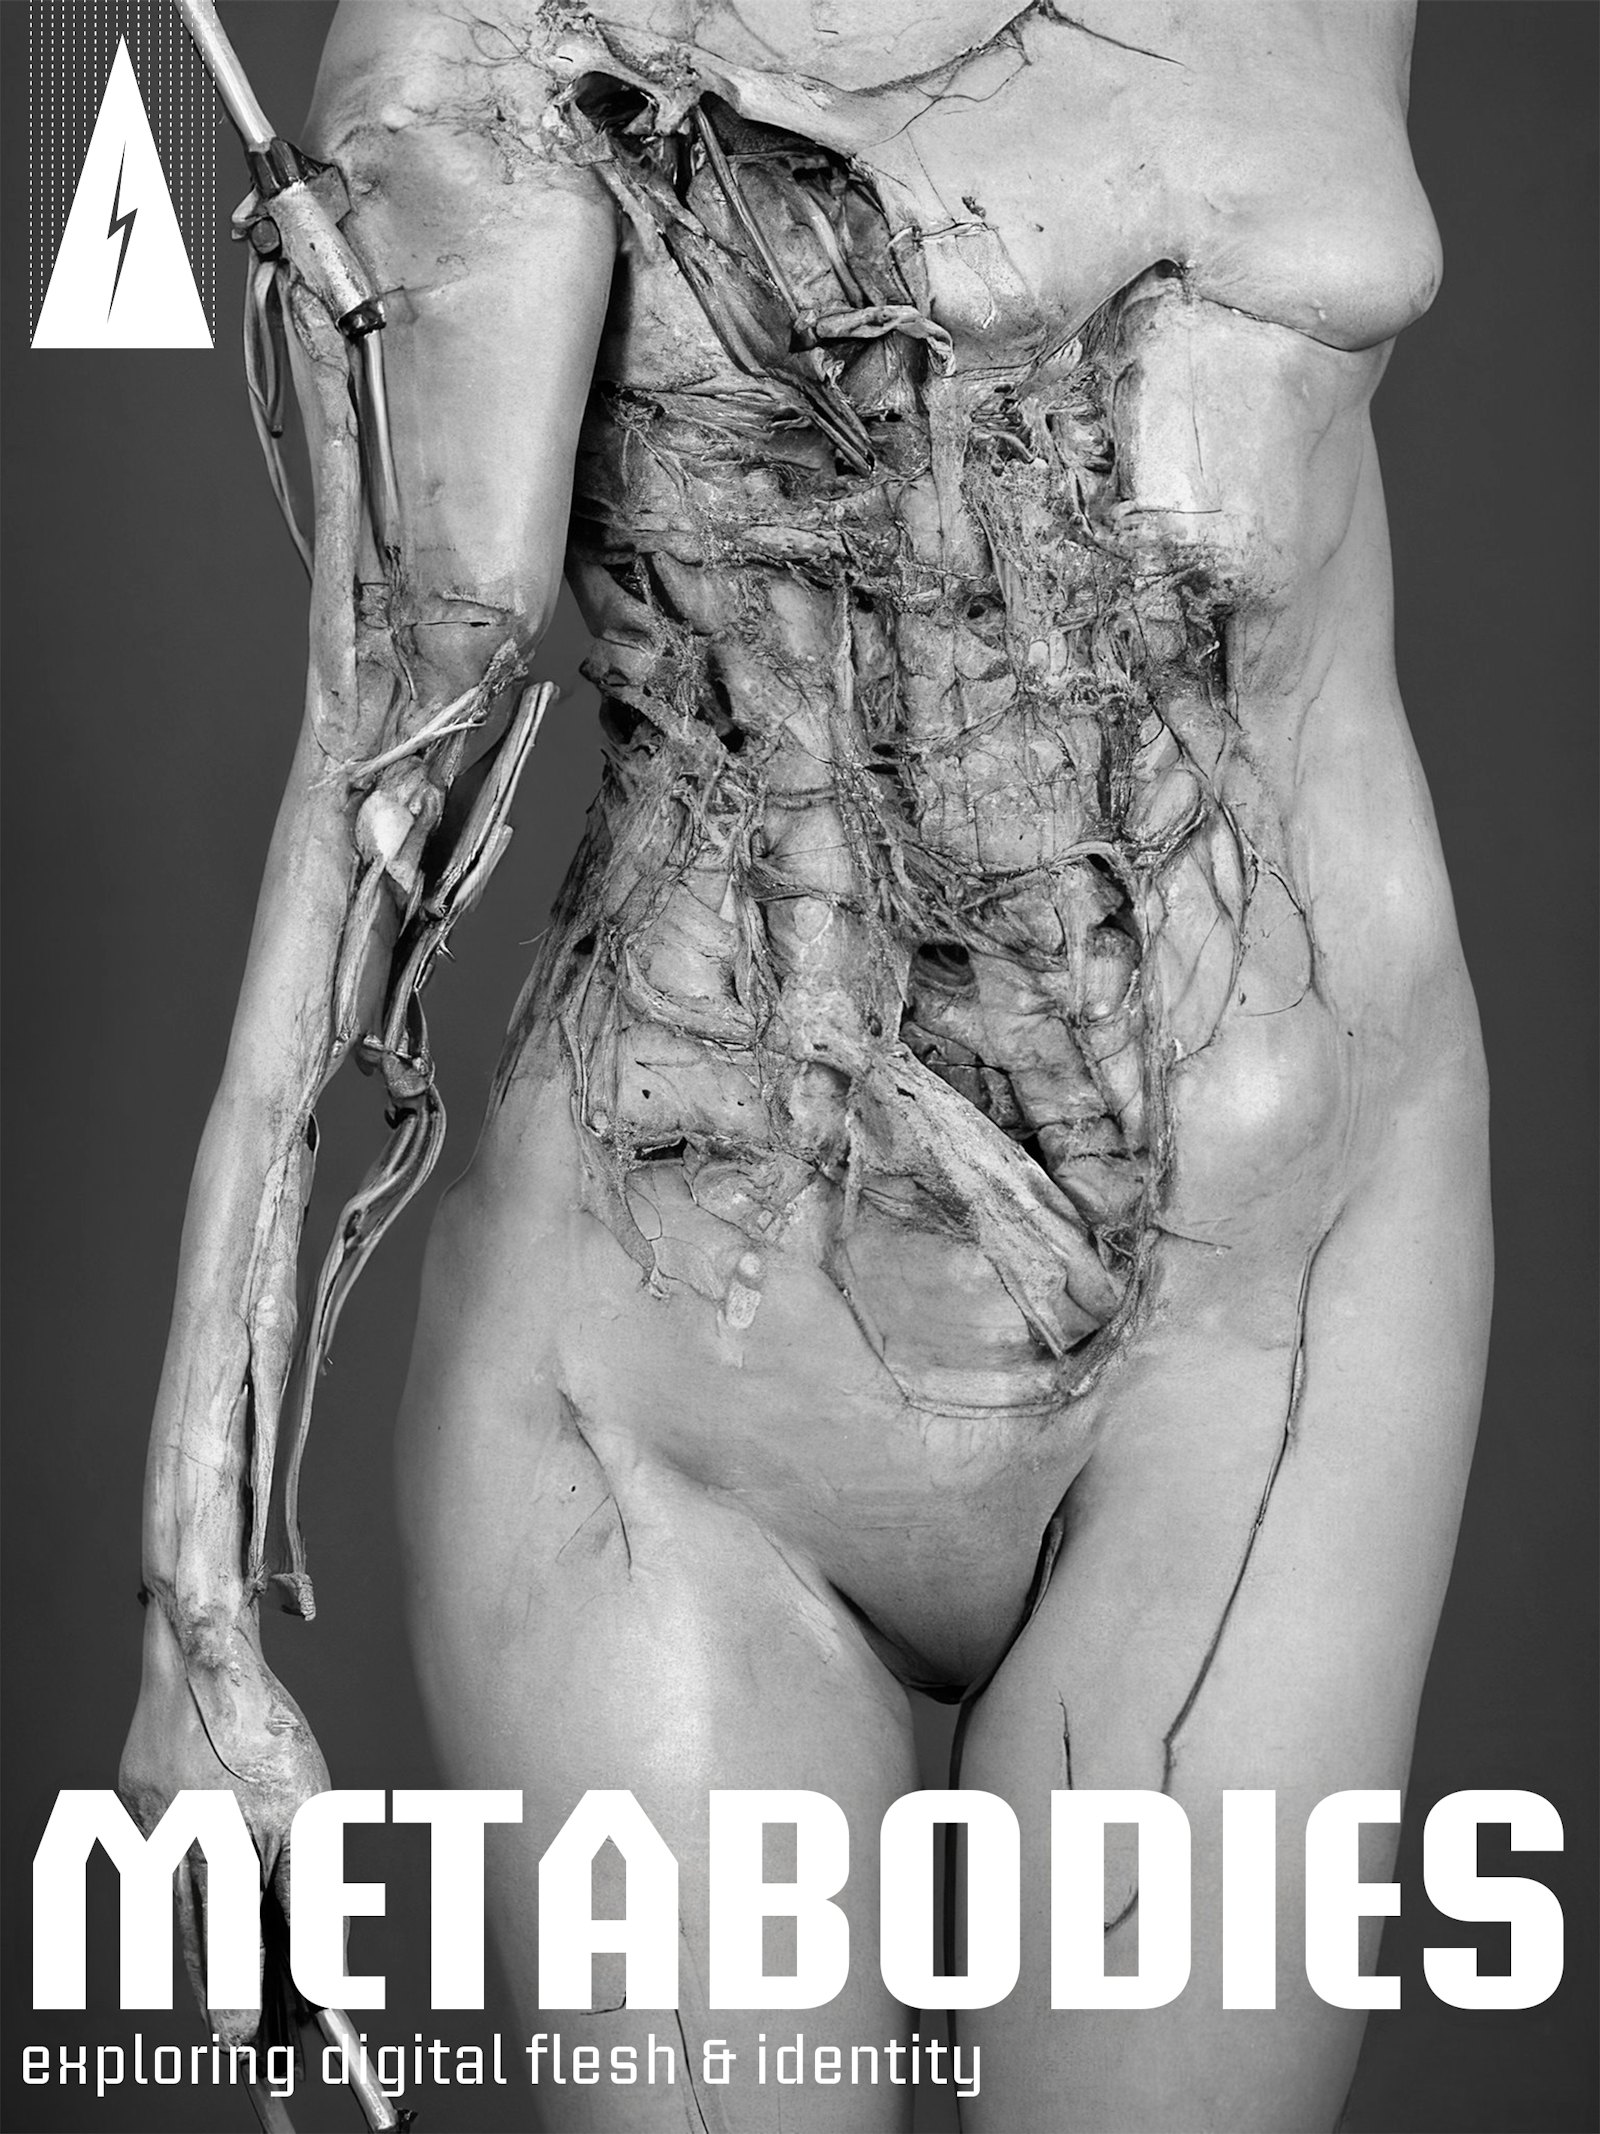 Metabodies